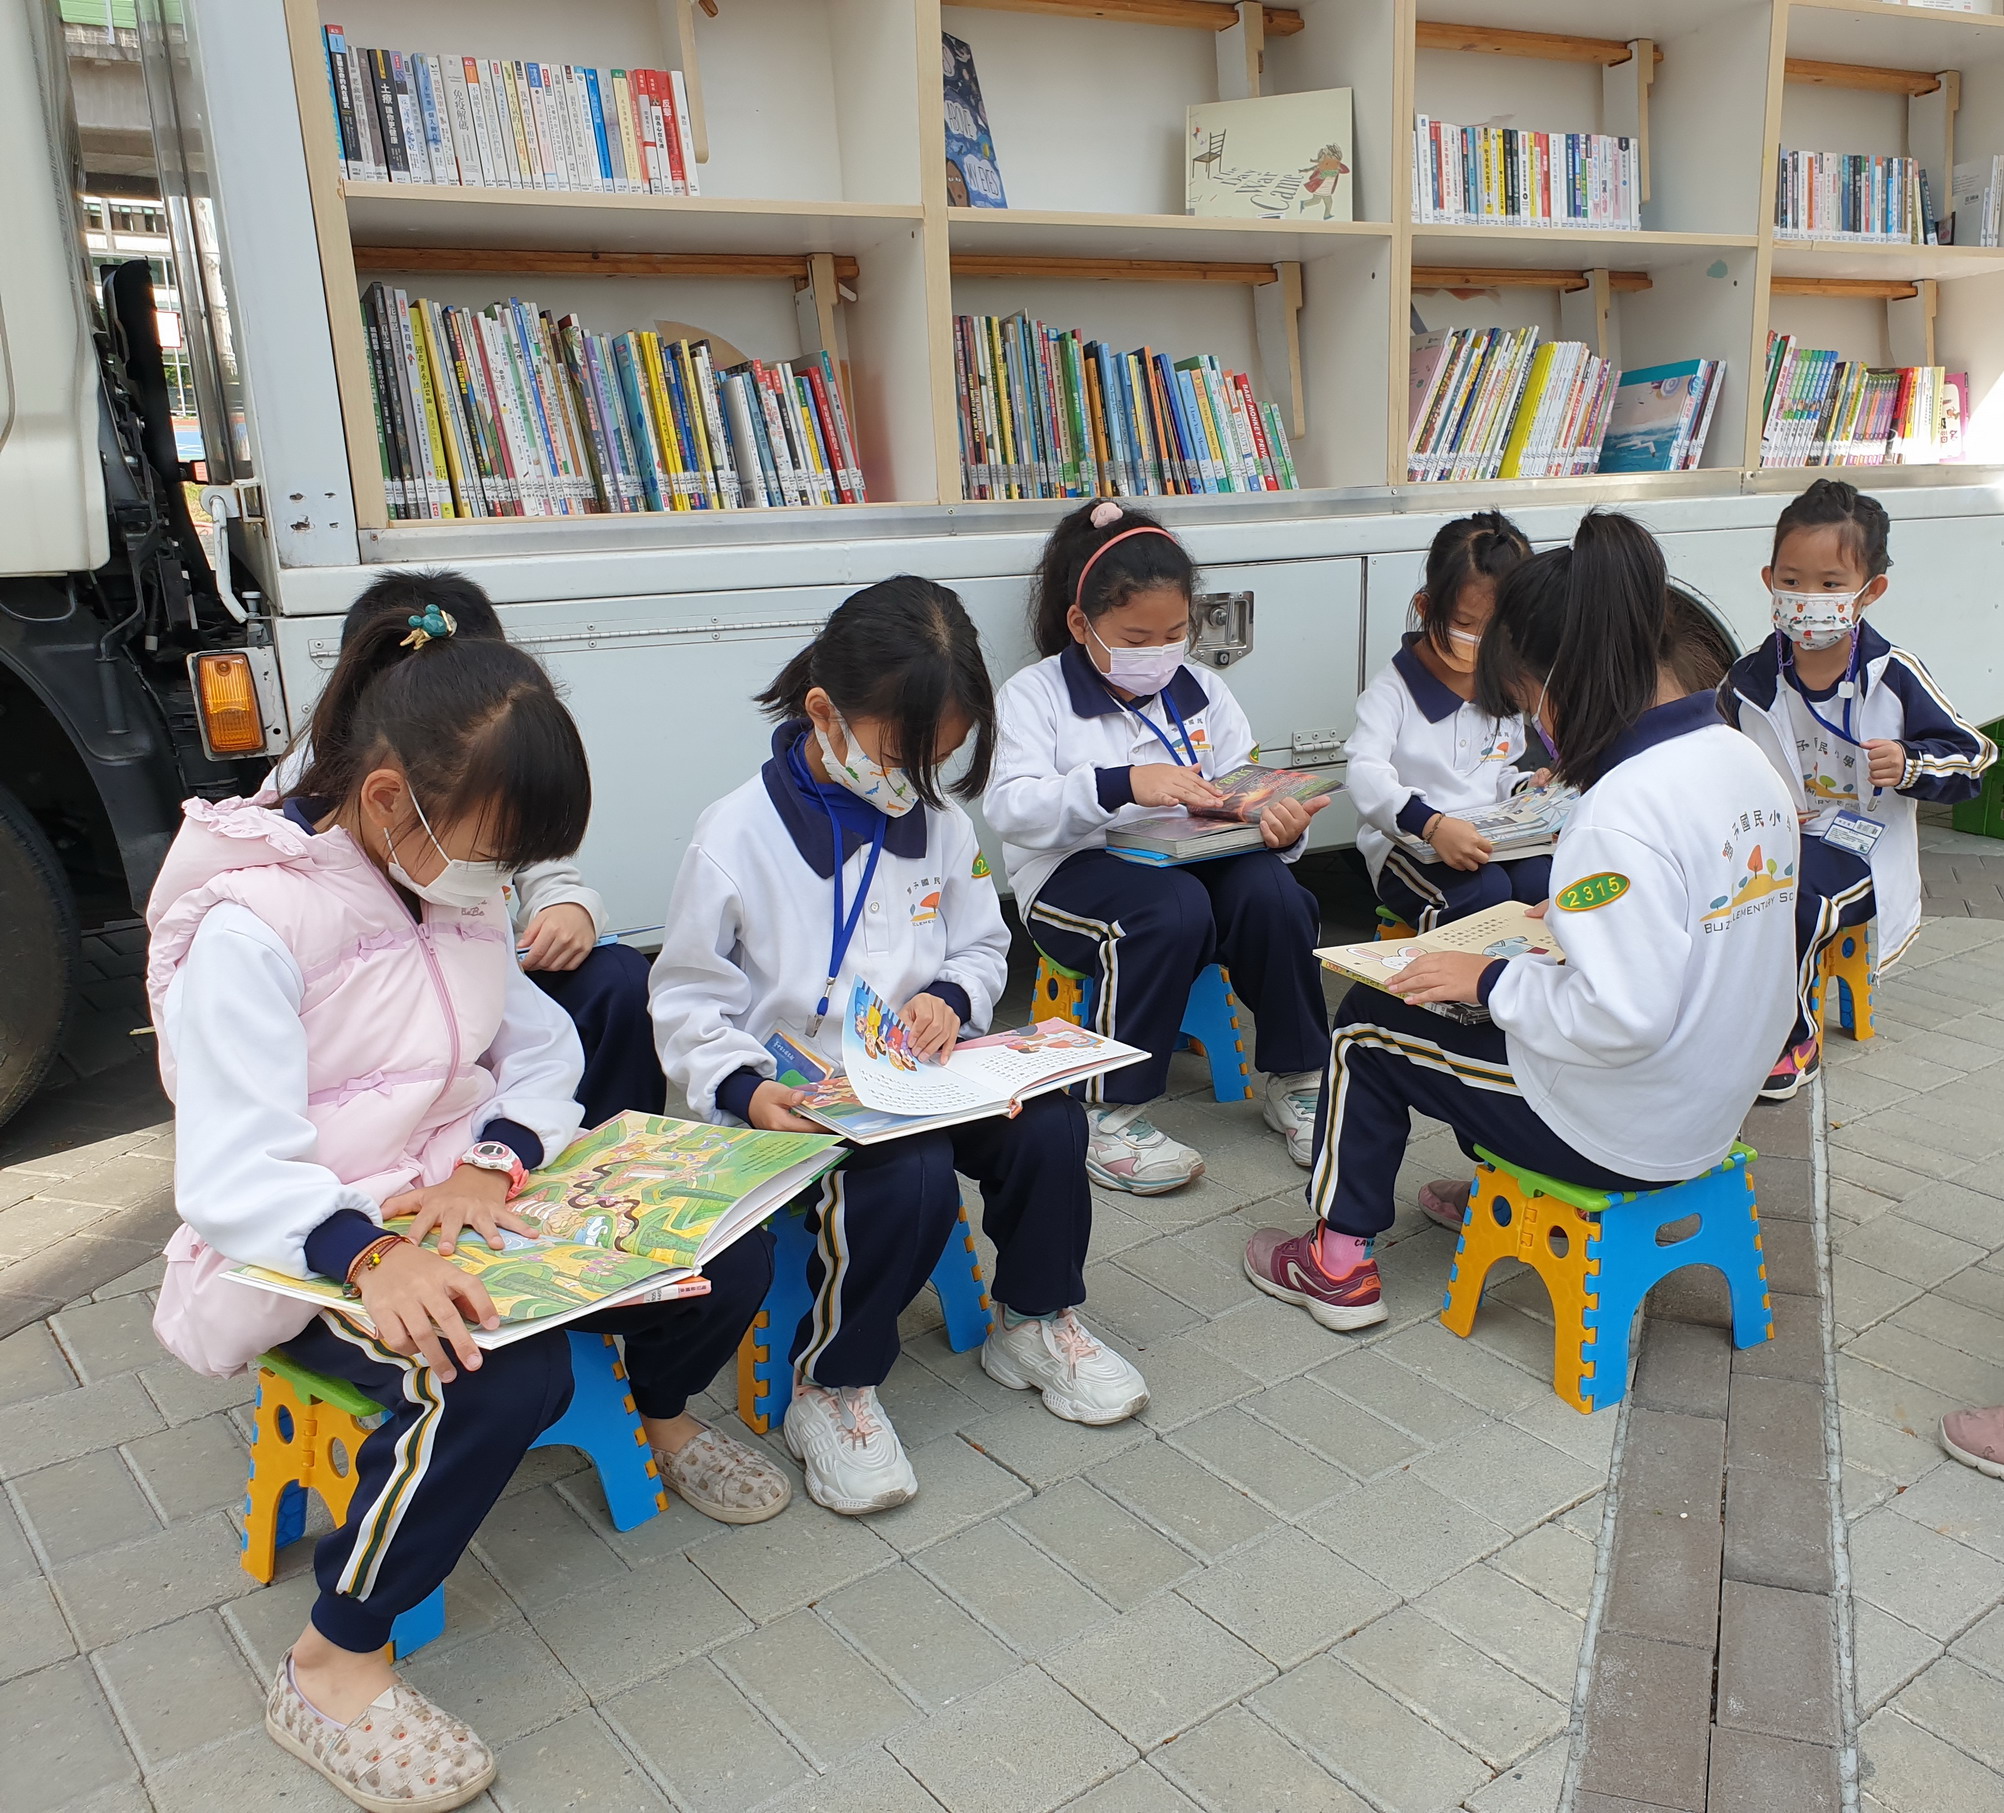 รัฐบาลเมืองไถจงต้องการส่งเสริมให้ประชาชนรักการอ่าน ภาพจาก／สำนักวัฒนธรรม รัฐบาลเมืองไถจง (Cultural Affairs Bureau, Taichung City Government)